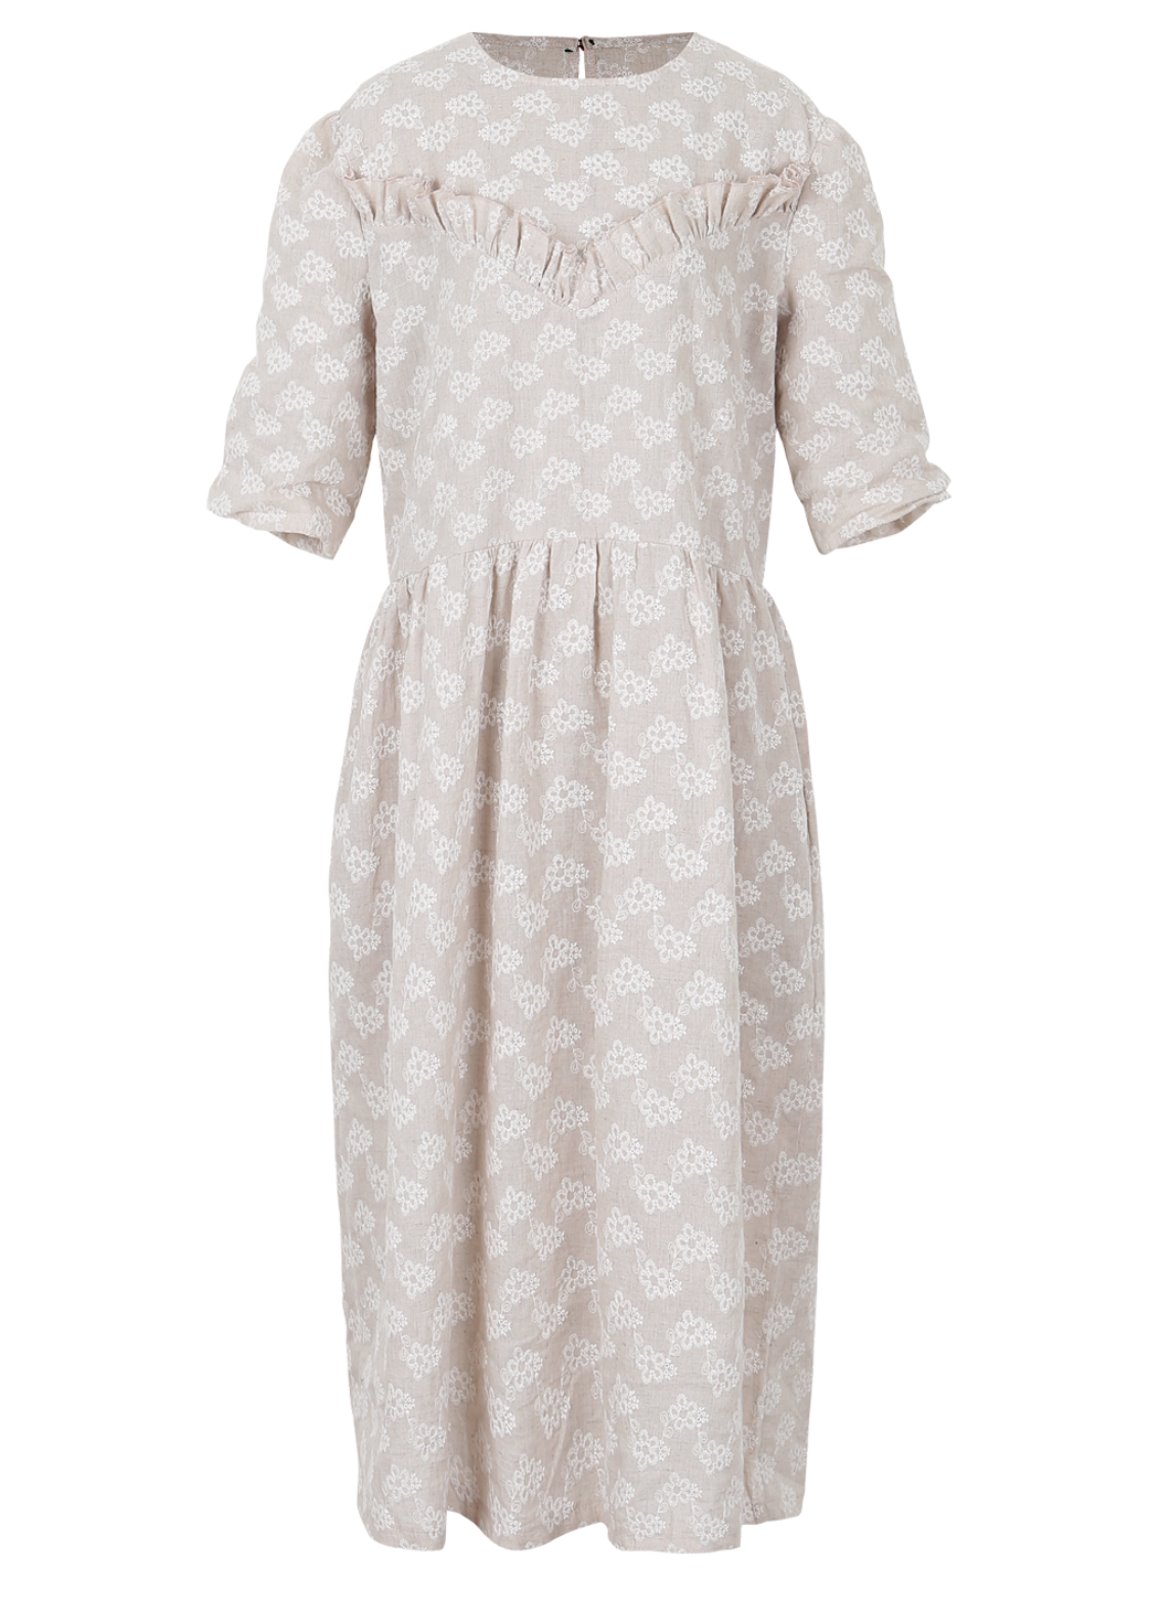  W. Jasmine linen dress   